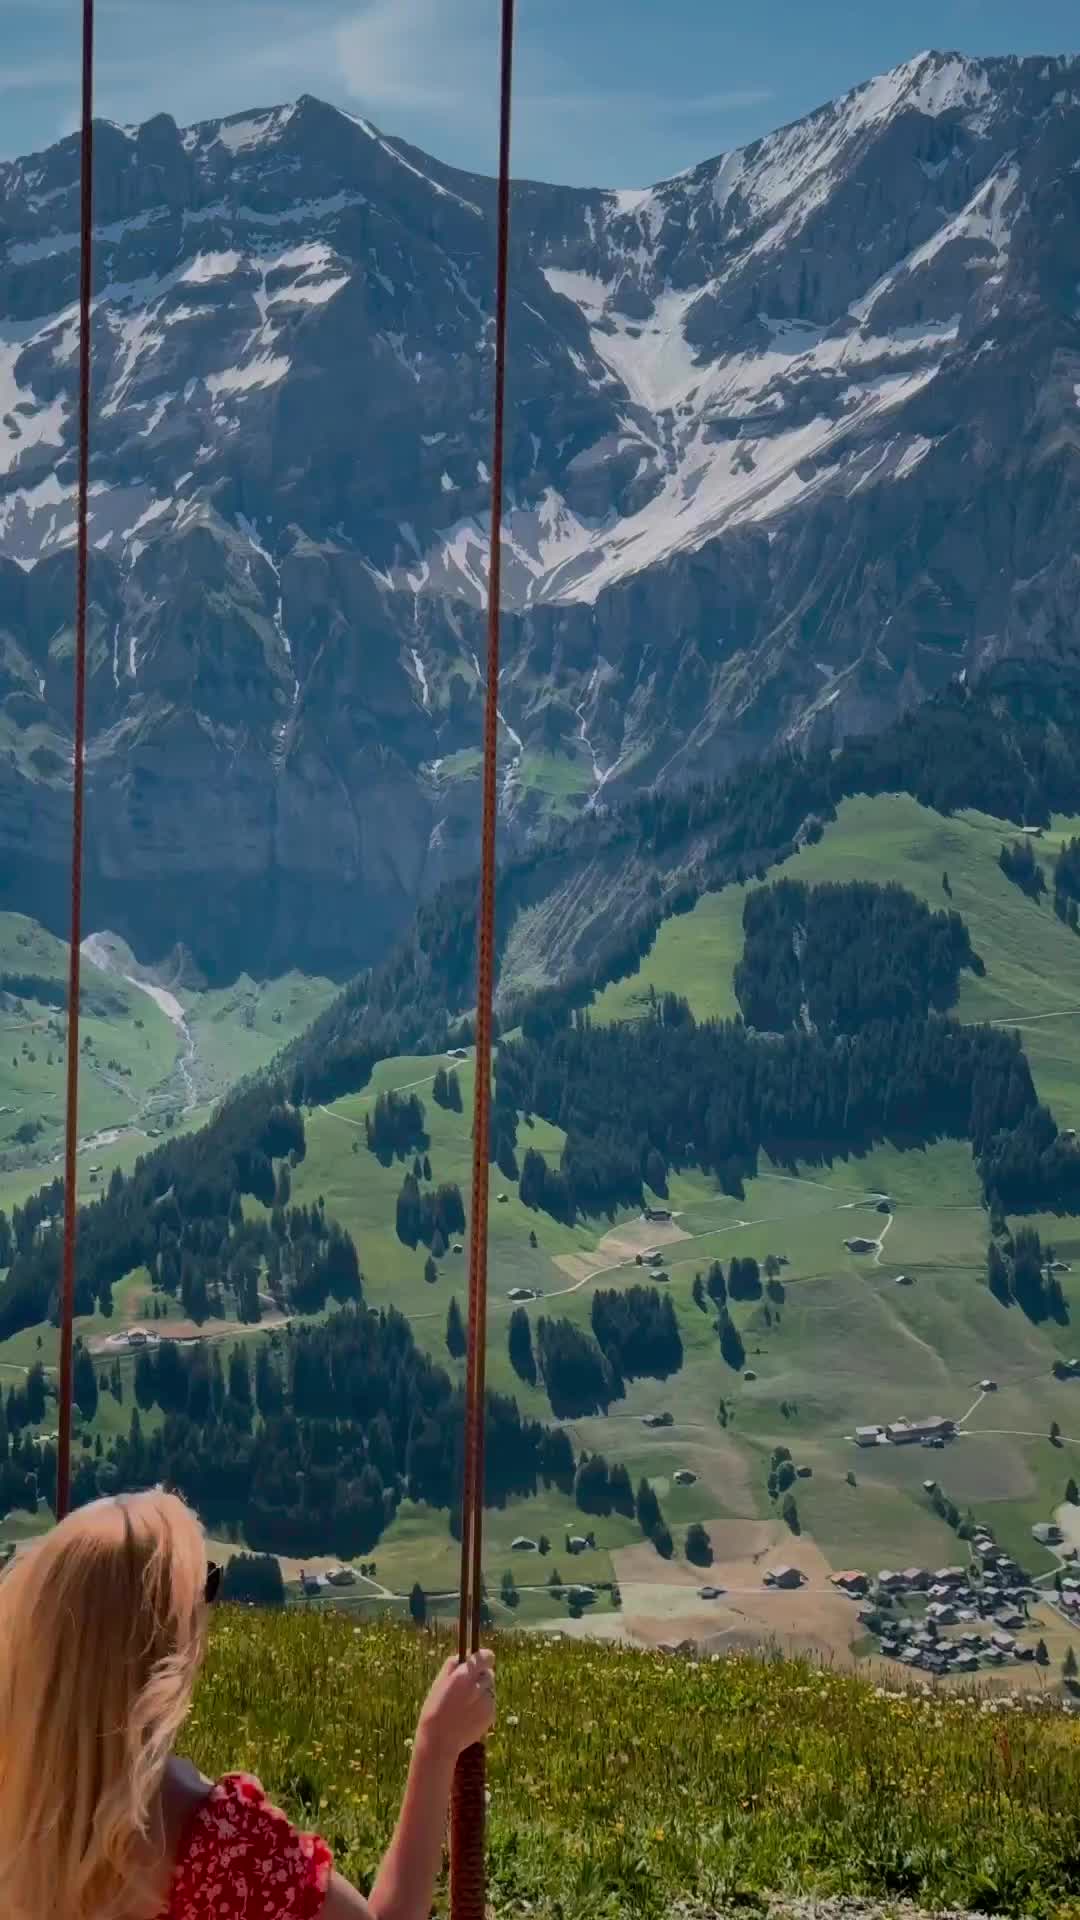 Thrill of Giant Swing at TschentenAlp, Adelboden